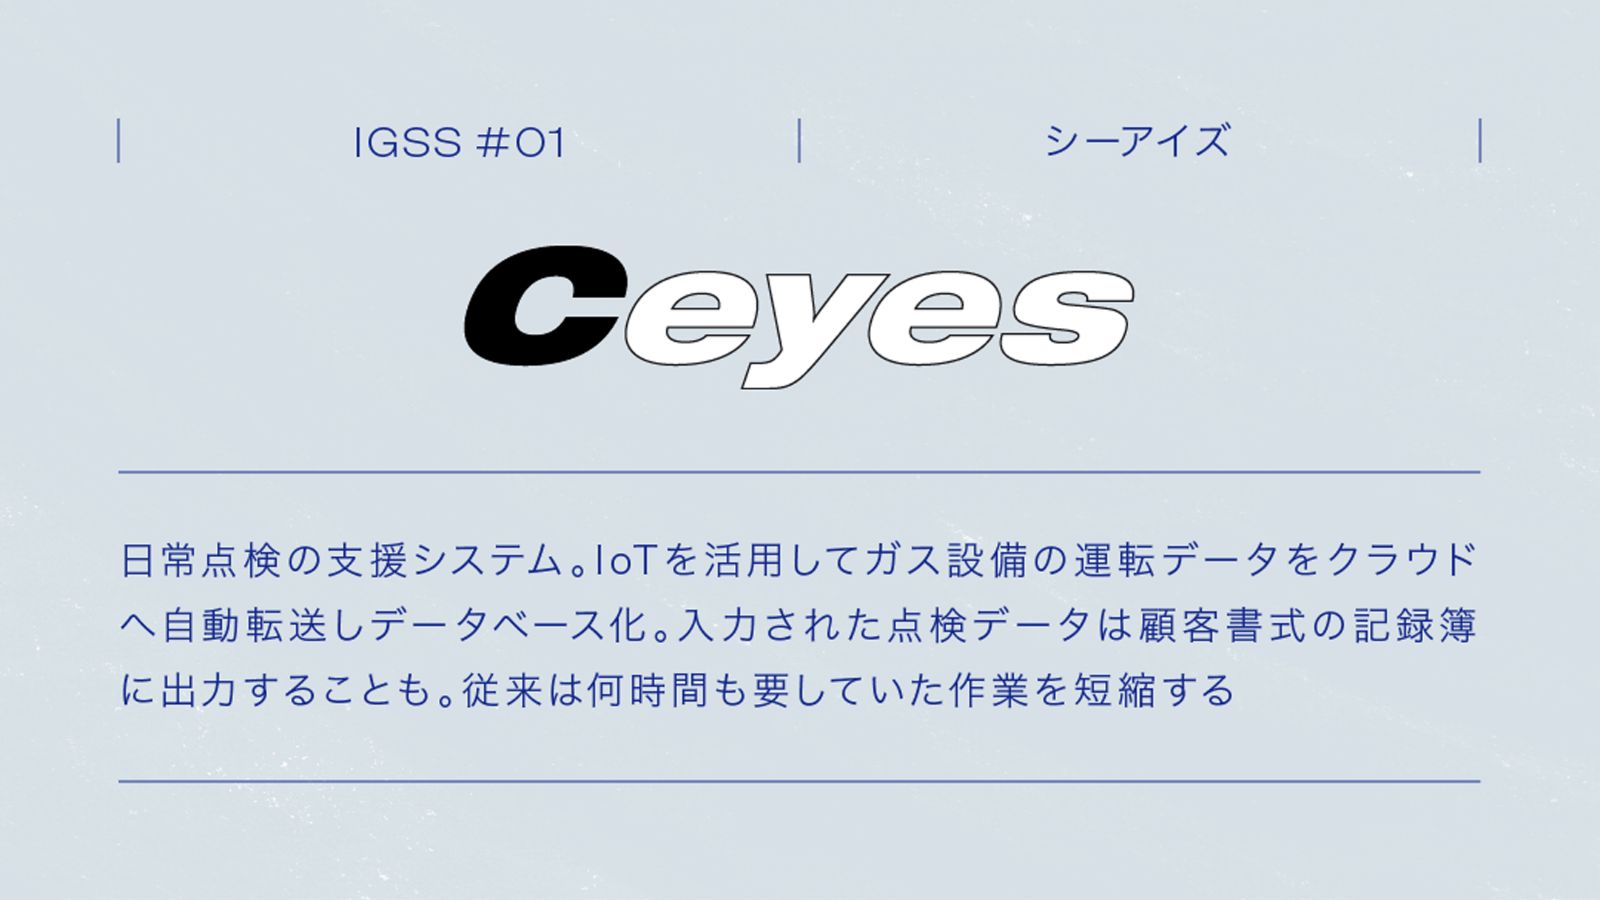 IGSS #01 Ceyes シーアイズ 日本点検の支援システム。IoTを活用してガス設備の運転データをクラウドへ自動転送し、データベース化。入力された点検データは顧客書式の記録簿に出力することも。従来は何時間も要していた作業を短縮する